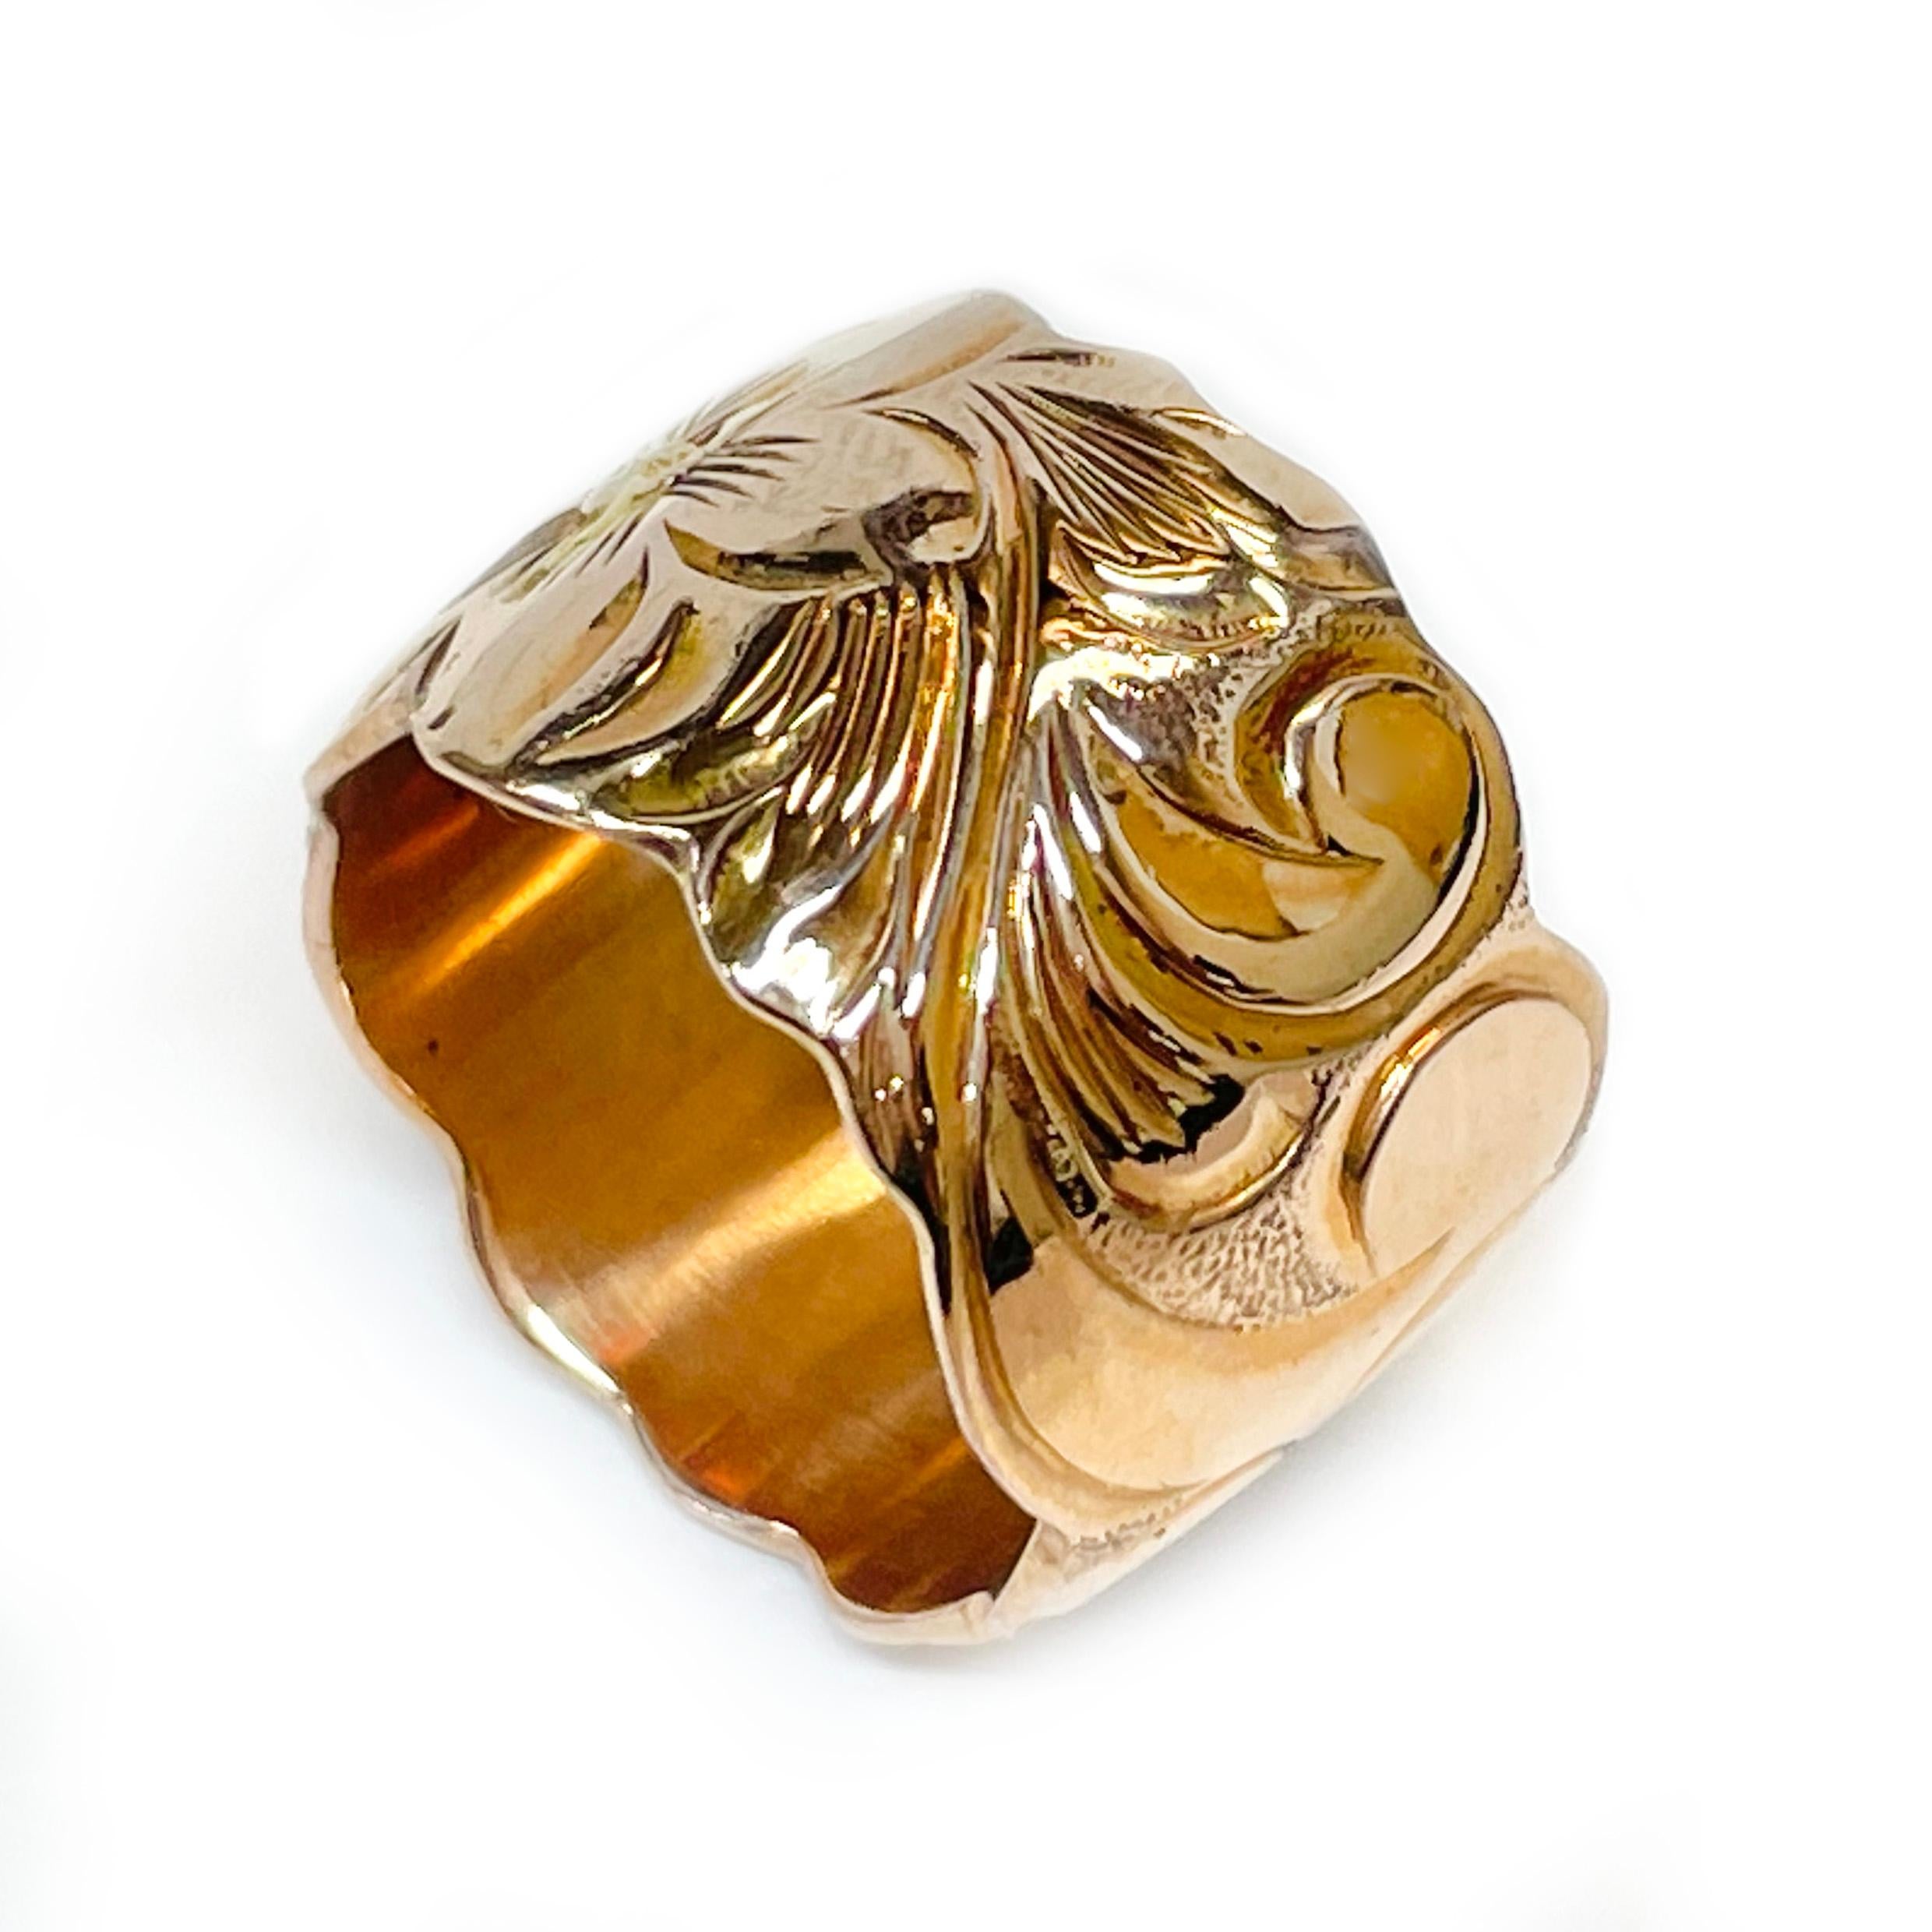 14 Karat Rose Gold Hawaiian Floral Ring. Der hawaiianische Ring zeigt zwei handgravierte fünfblättrige Plumeria-Blüten mit Blättern. Der Ring hat innen und außen eine glatte, glänzende Oberfläche. Auf der Innenseite des Bandes ist 14K eingestanzt.